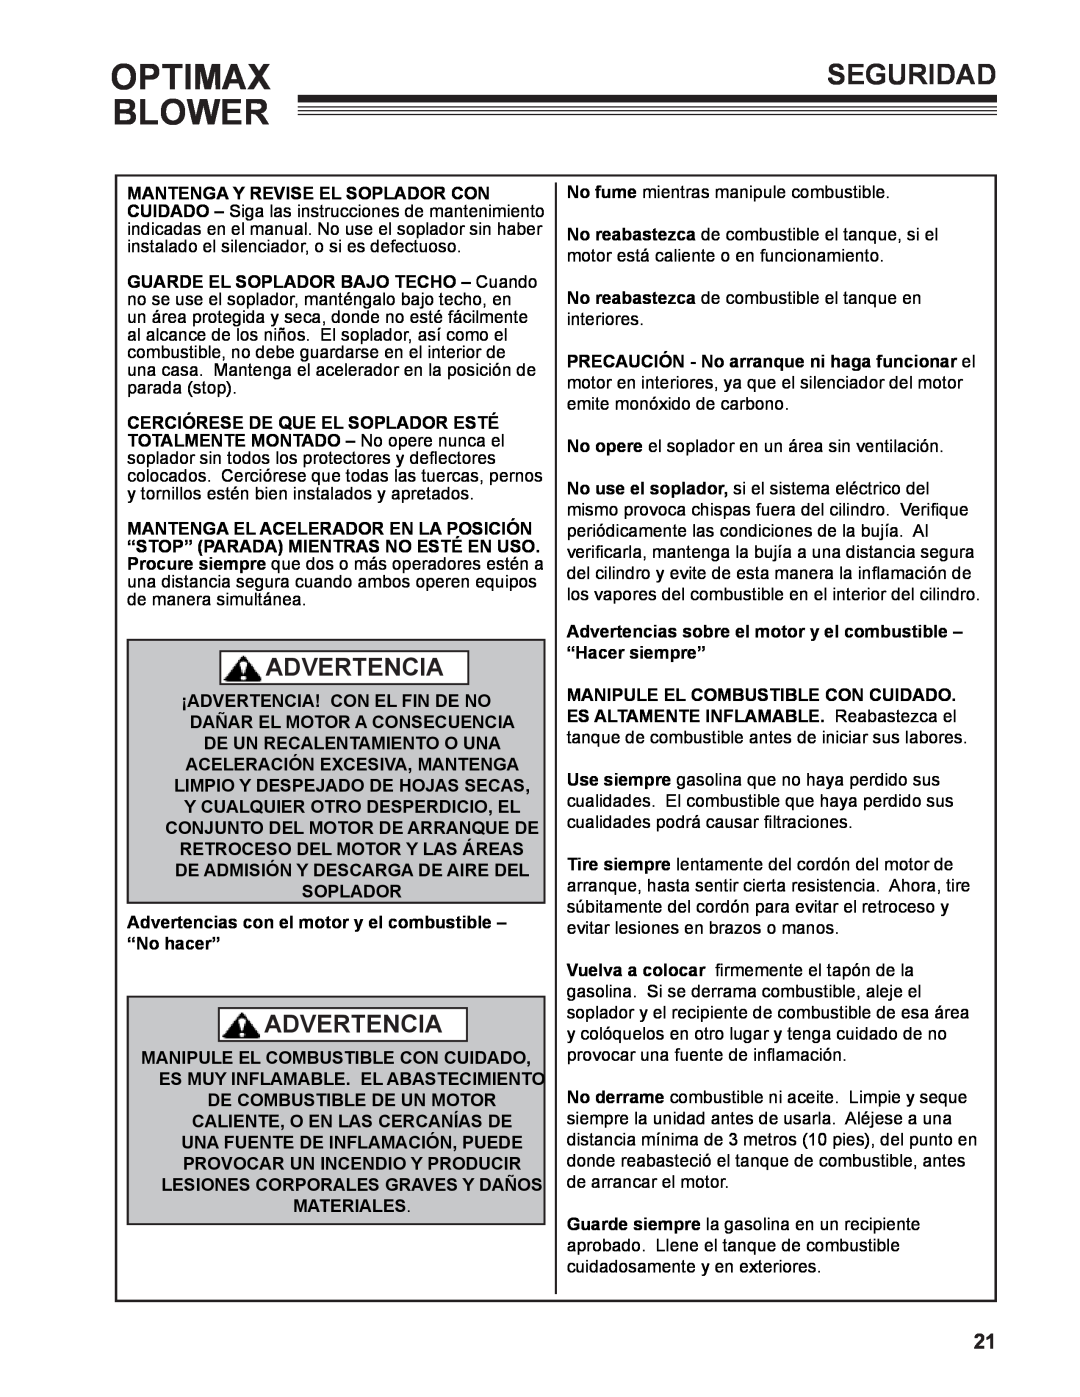 Little Wonder LB901-00-01 technical manual Optimax Blower, Seguridad, Advertencia, De Un Recalentamiento O Una 